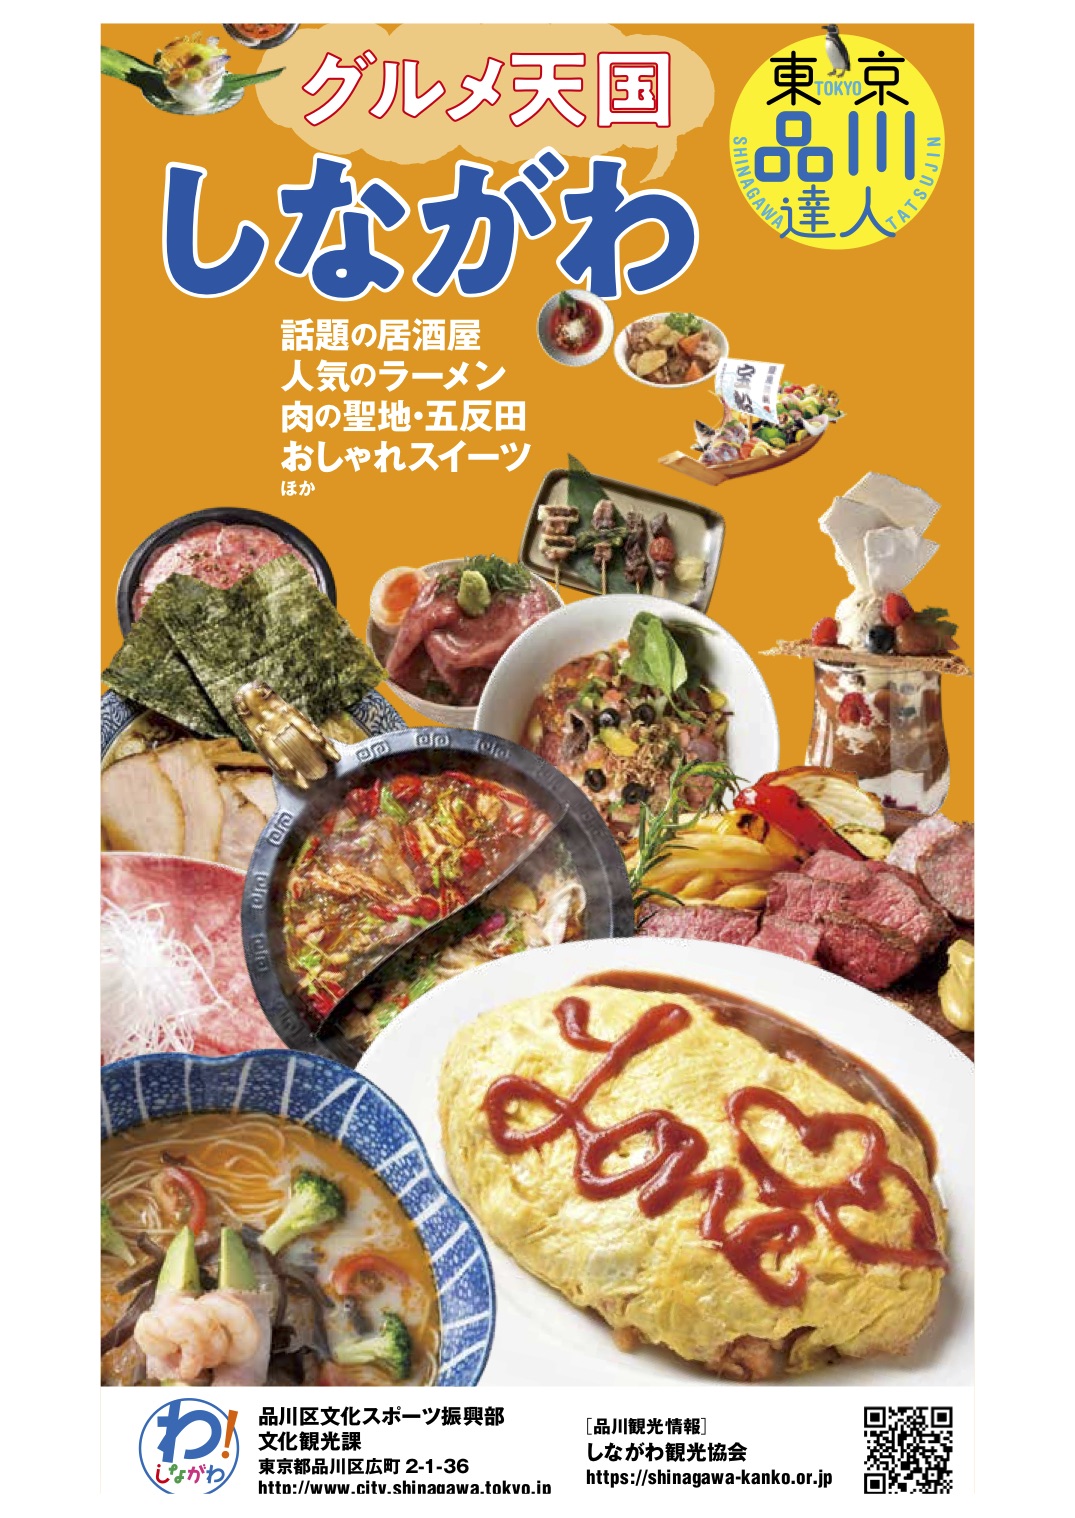 東京 品川達人 東京観光デジタルパンフレットギャラリー Tokyo Brochures